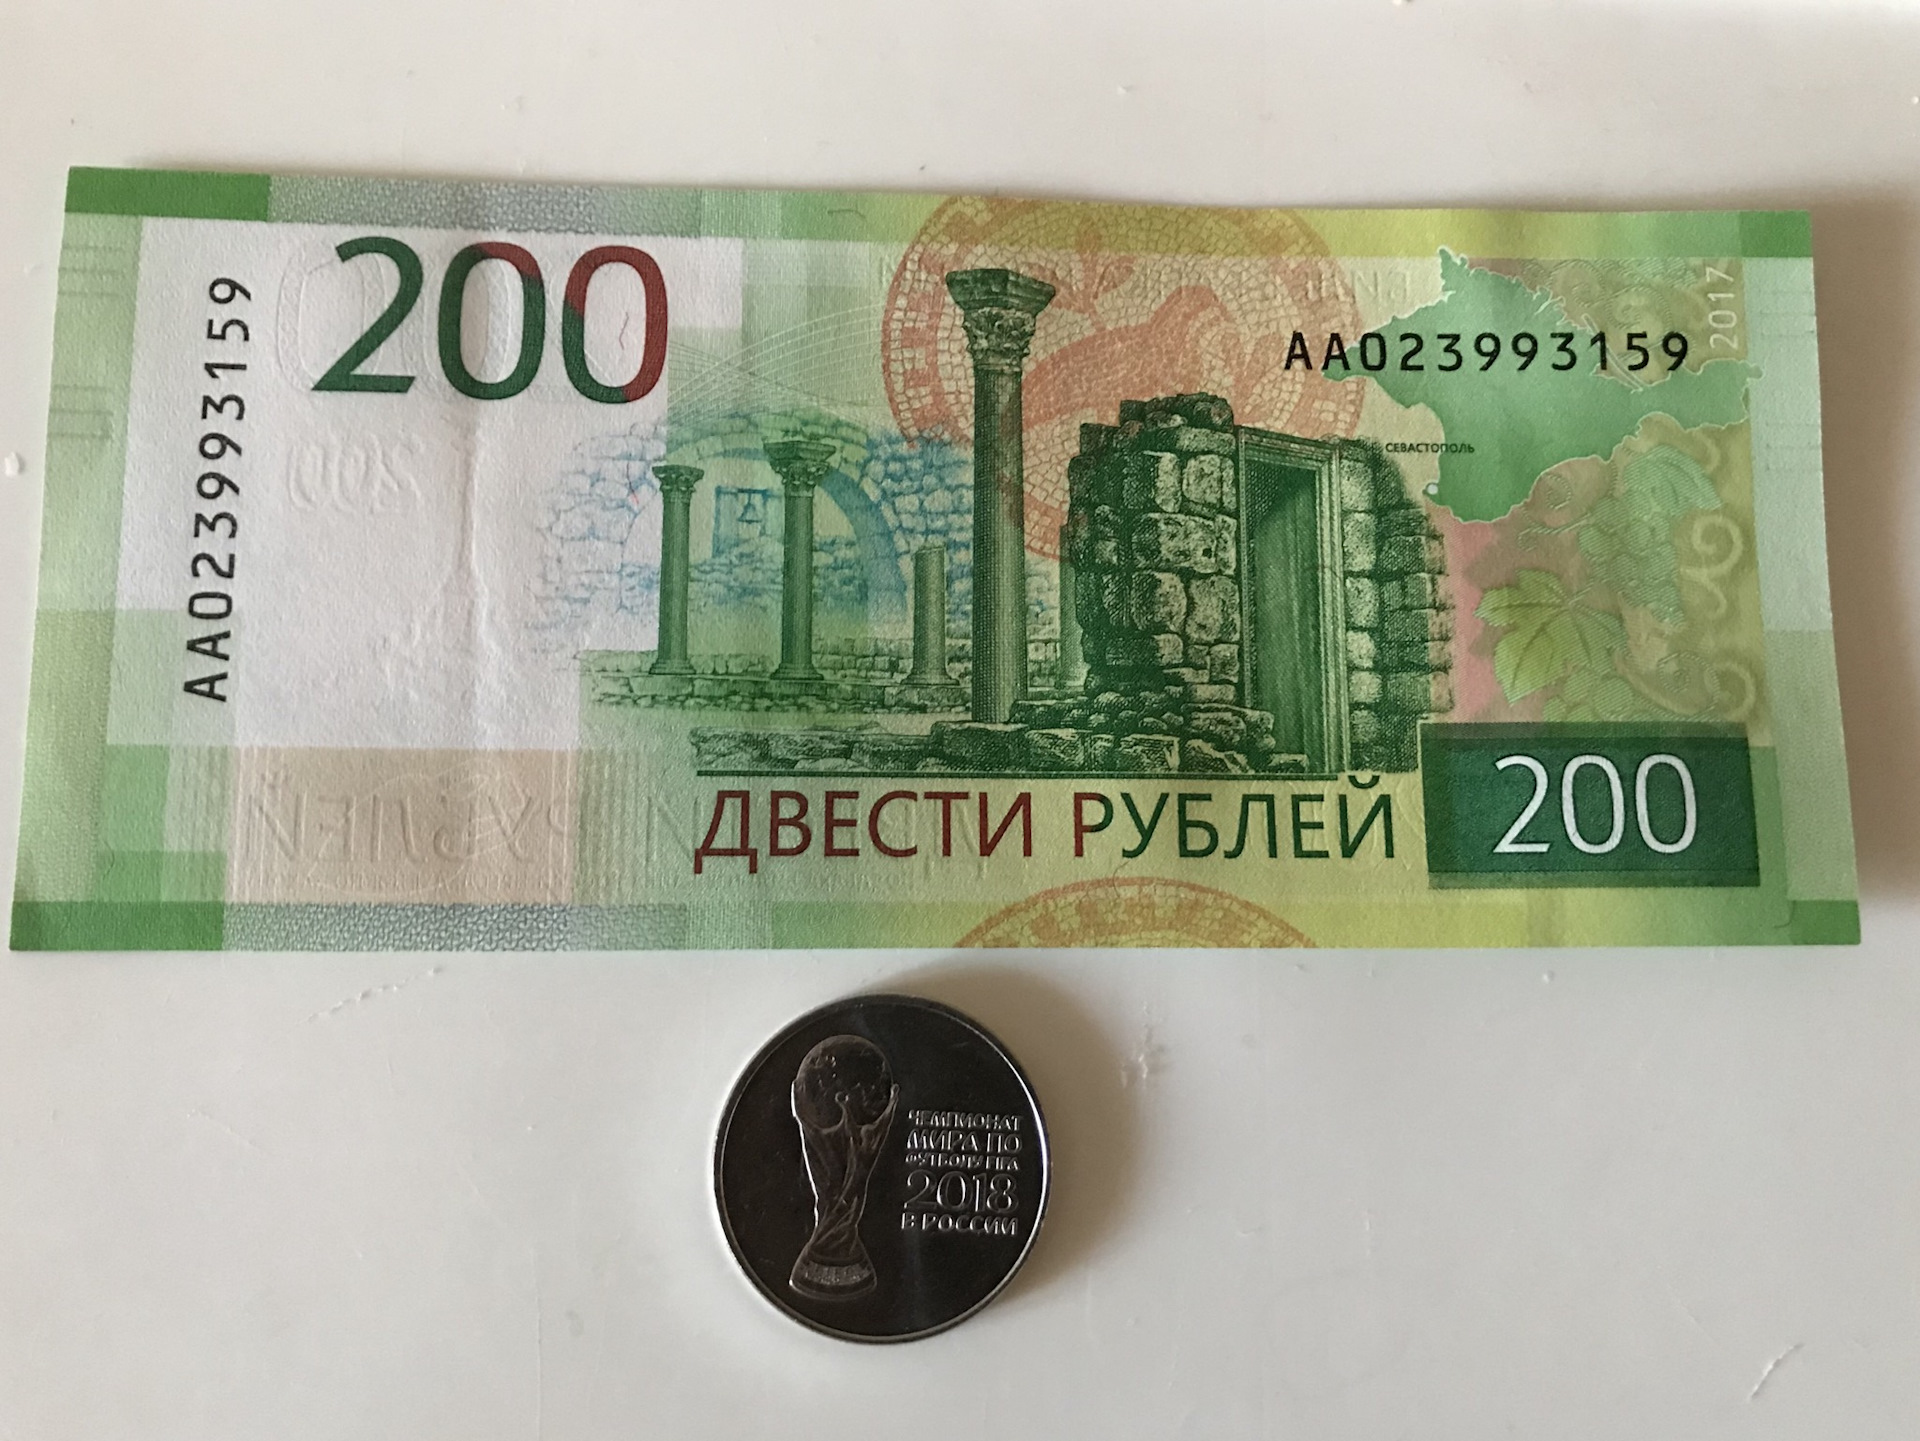 Номера 200 рублей. 200 Рублей. 200 Рублей юбилейные. Двести рублей юбилейные. Памятные 200 руб.